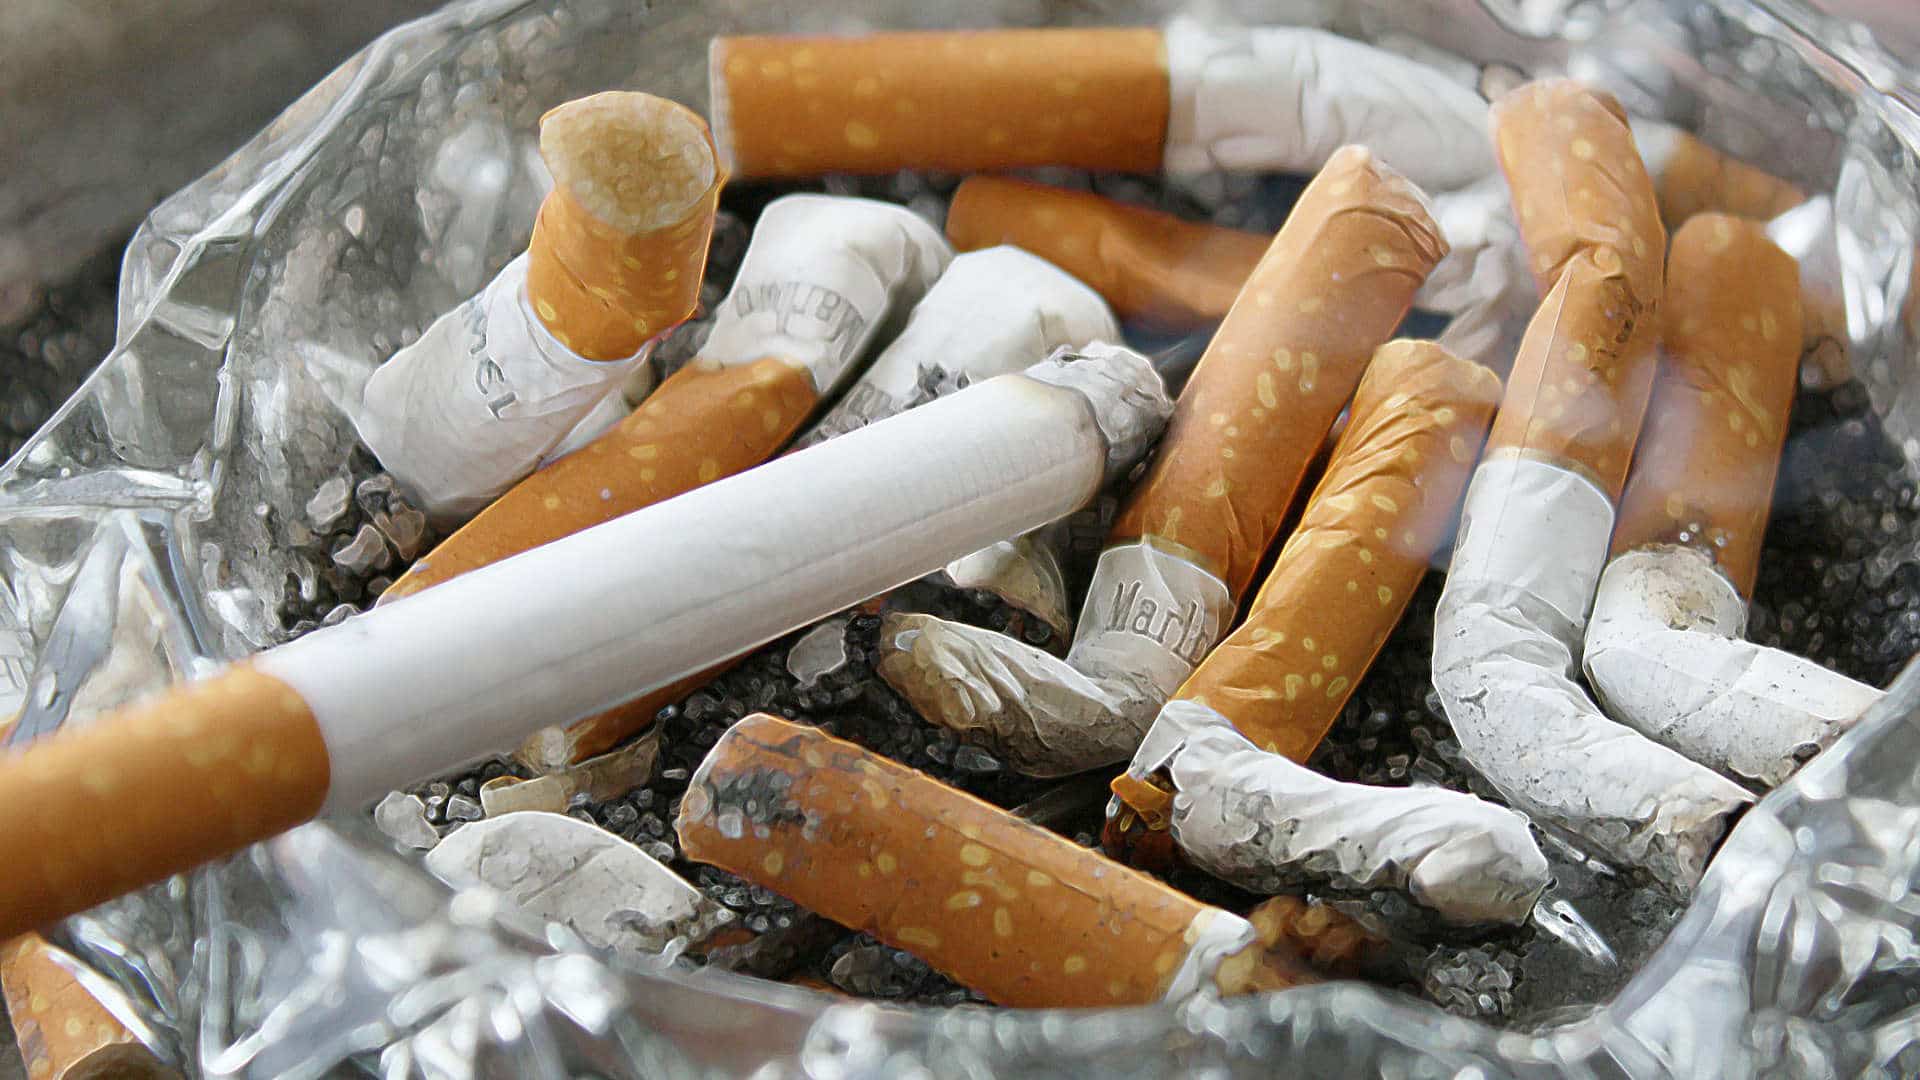 Cigarettes in glass ashtray